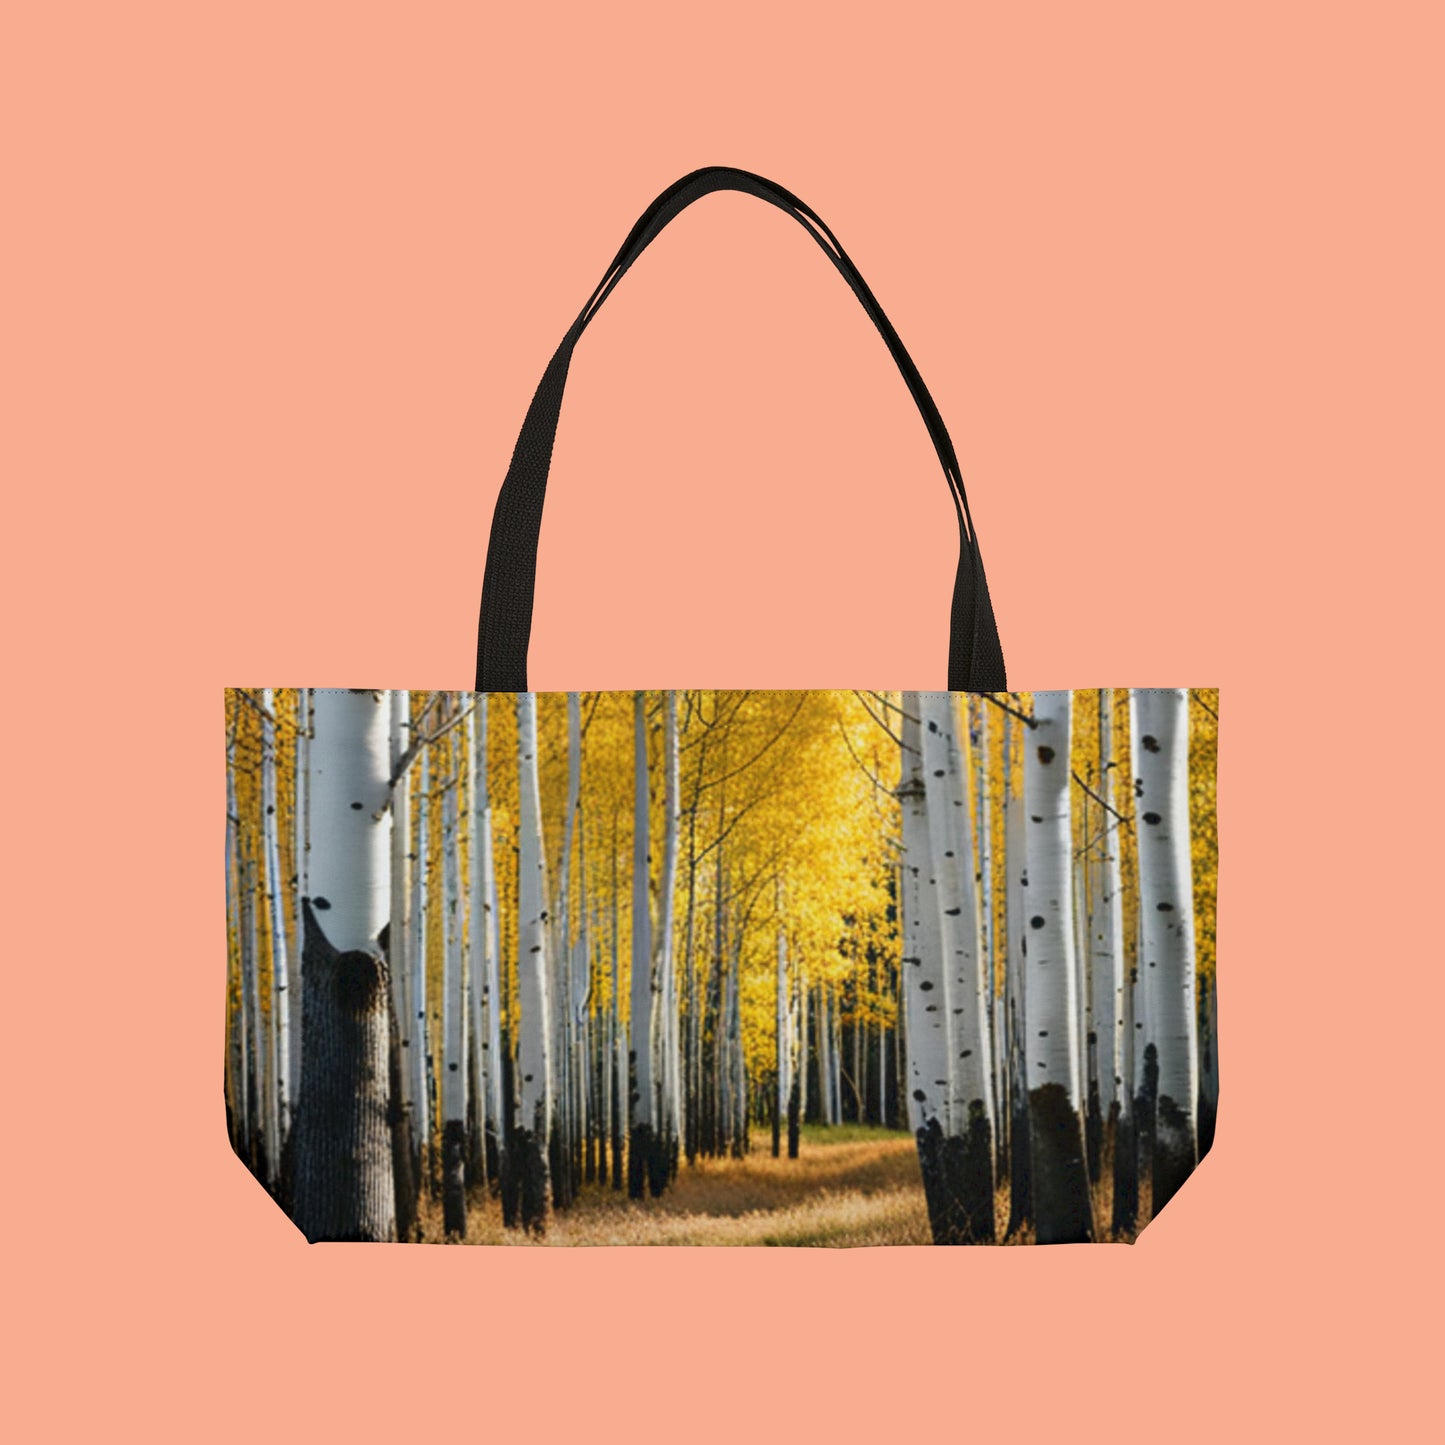 Aspen trees in their splendor on this beautiful Weekender Tote Bag.